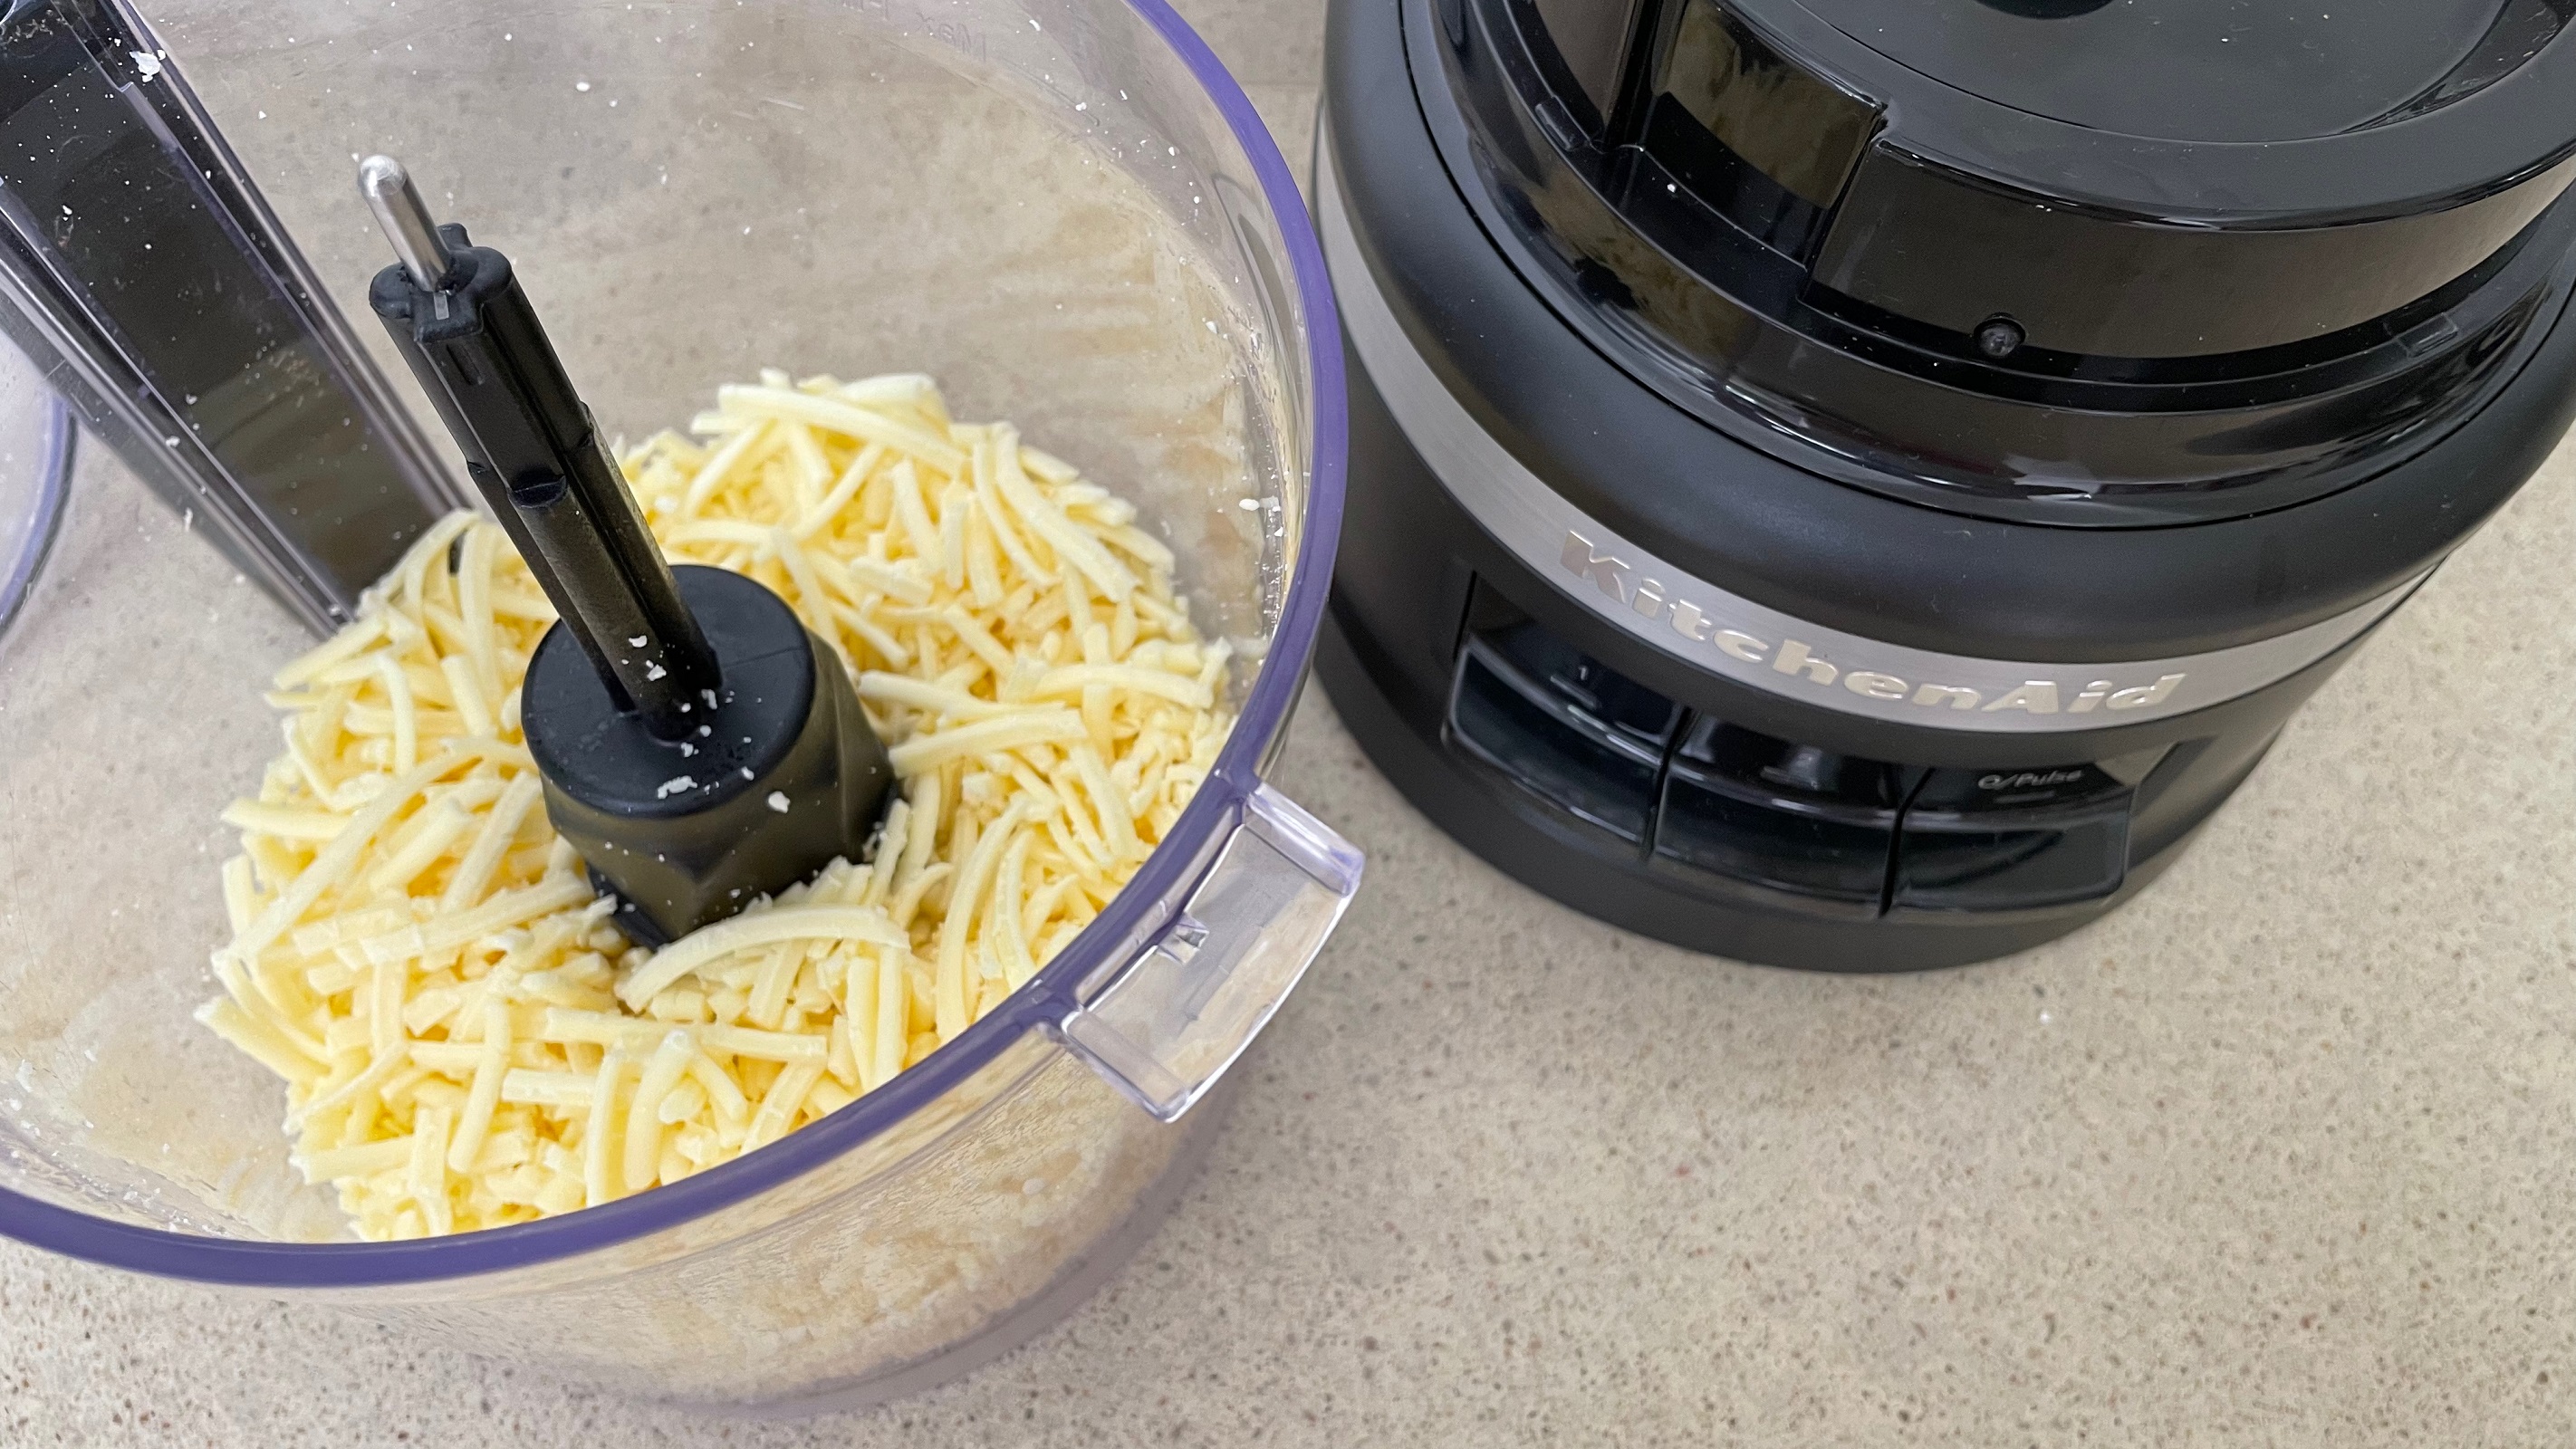 processador de alimentos kitchenaid cortando queijo